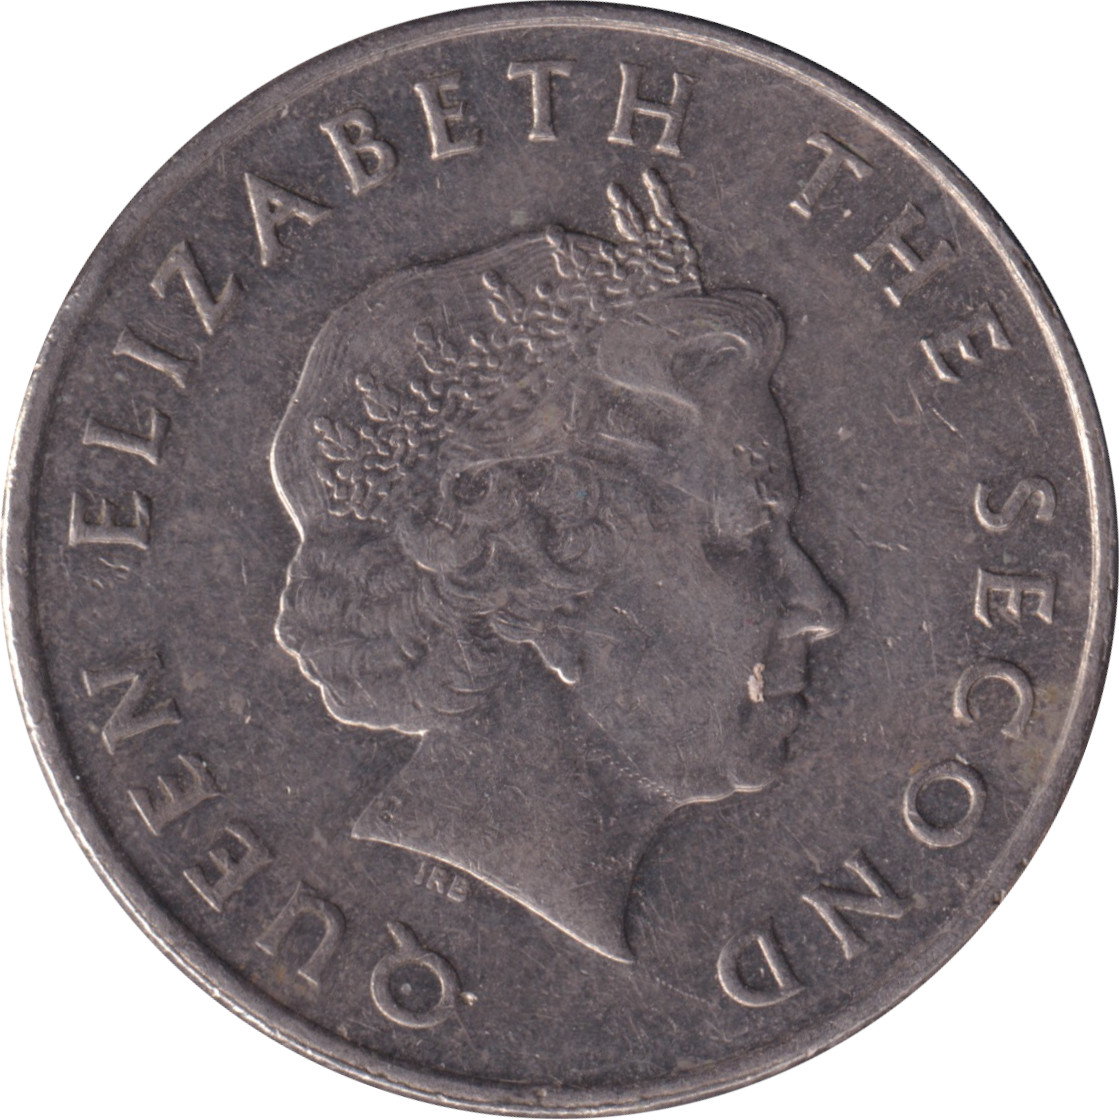 25 cents - Elizabeth II - Tête agée